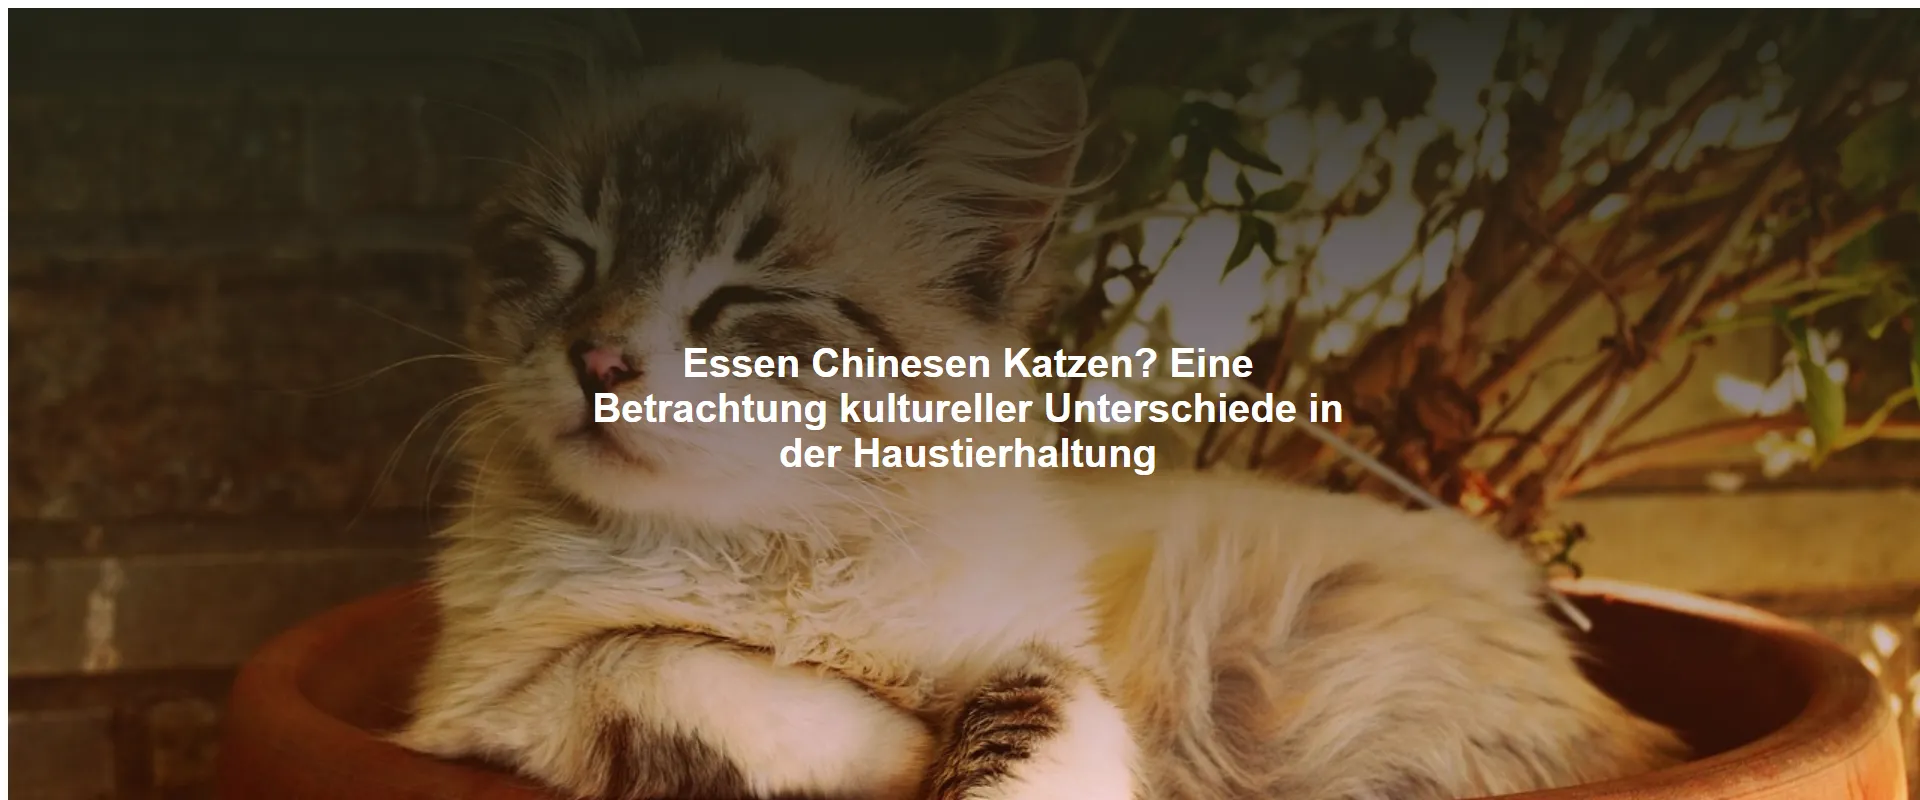 Essen Chinesen Katzen? Eine Betrachtung kultureller Unterschiede in der Haustierhaltung